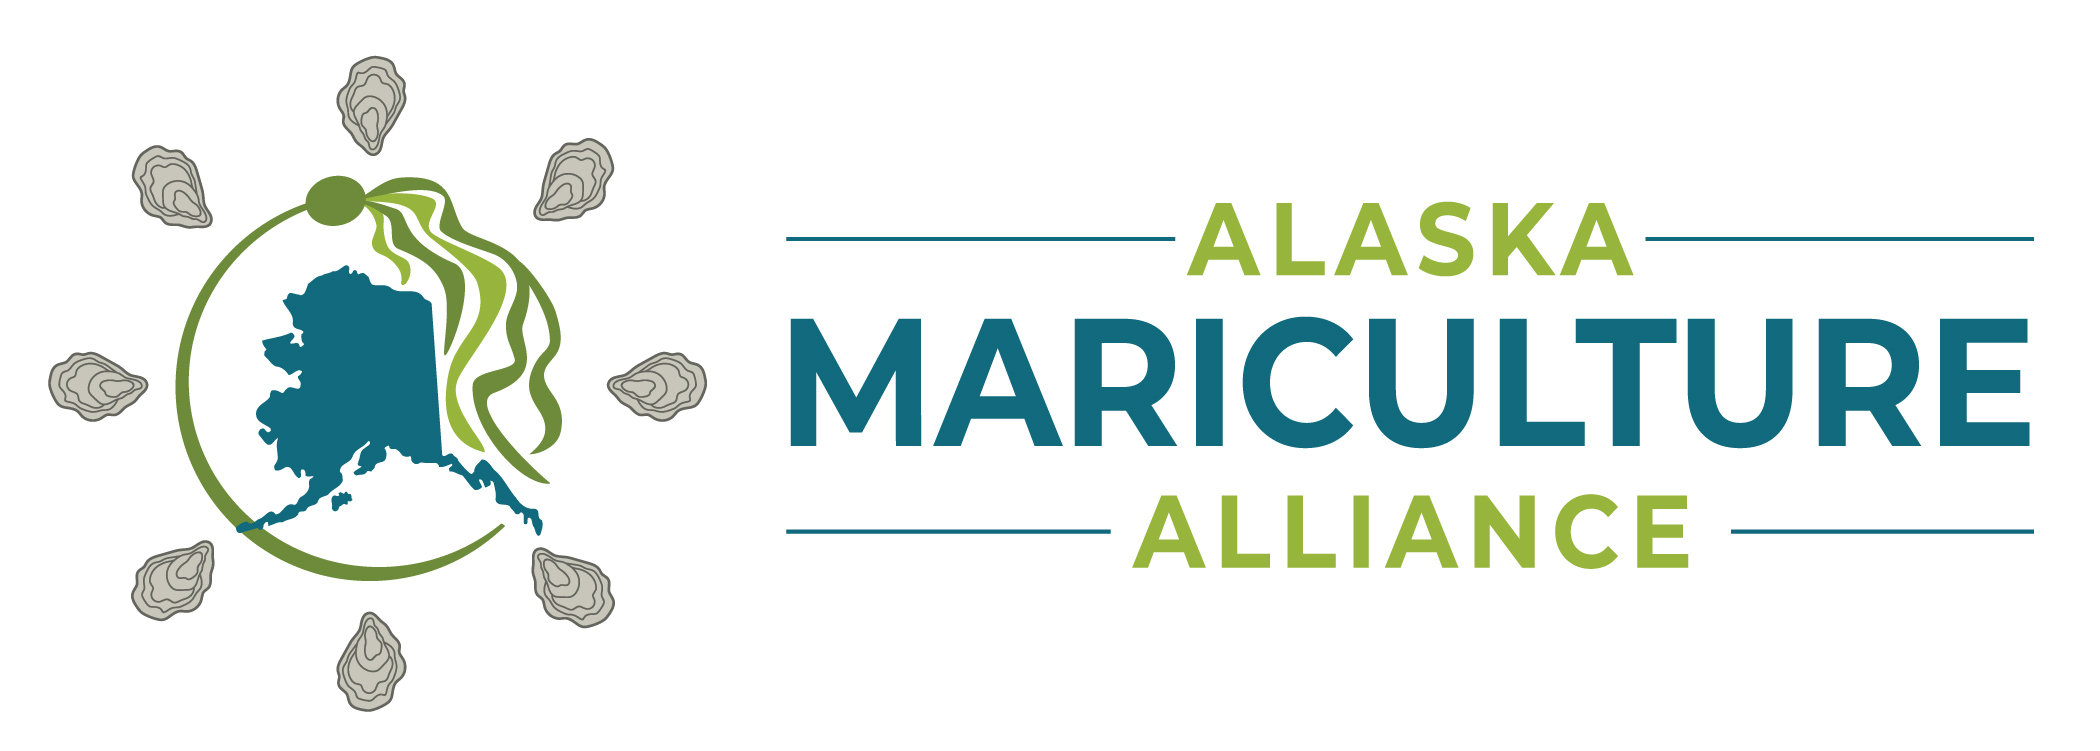 Alaska Mariculture Alliance